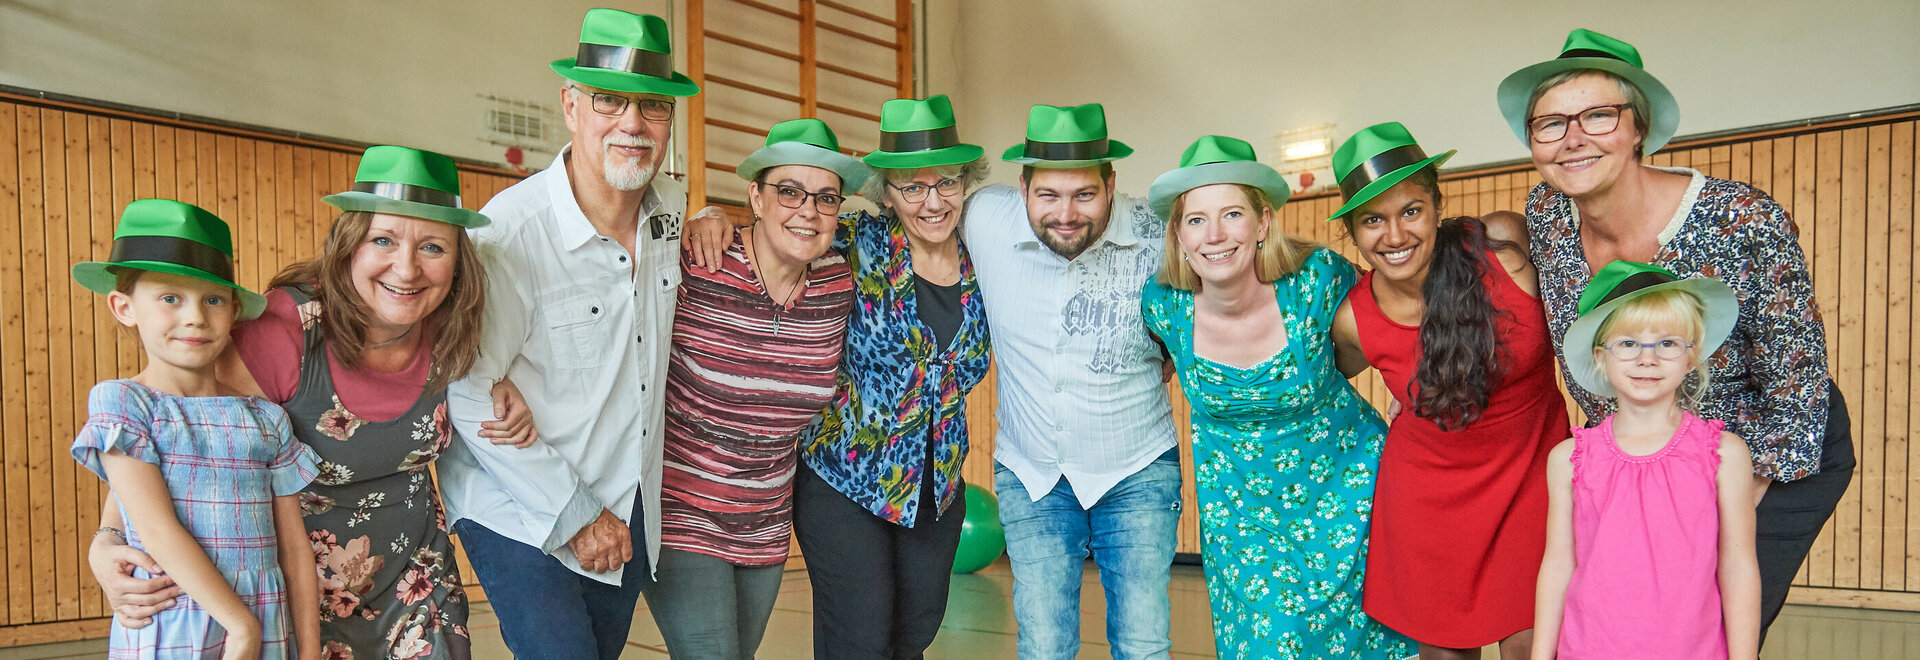 Gruppenbild Menschen mit grünen Hüten